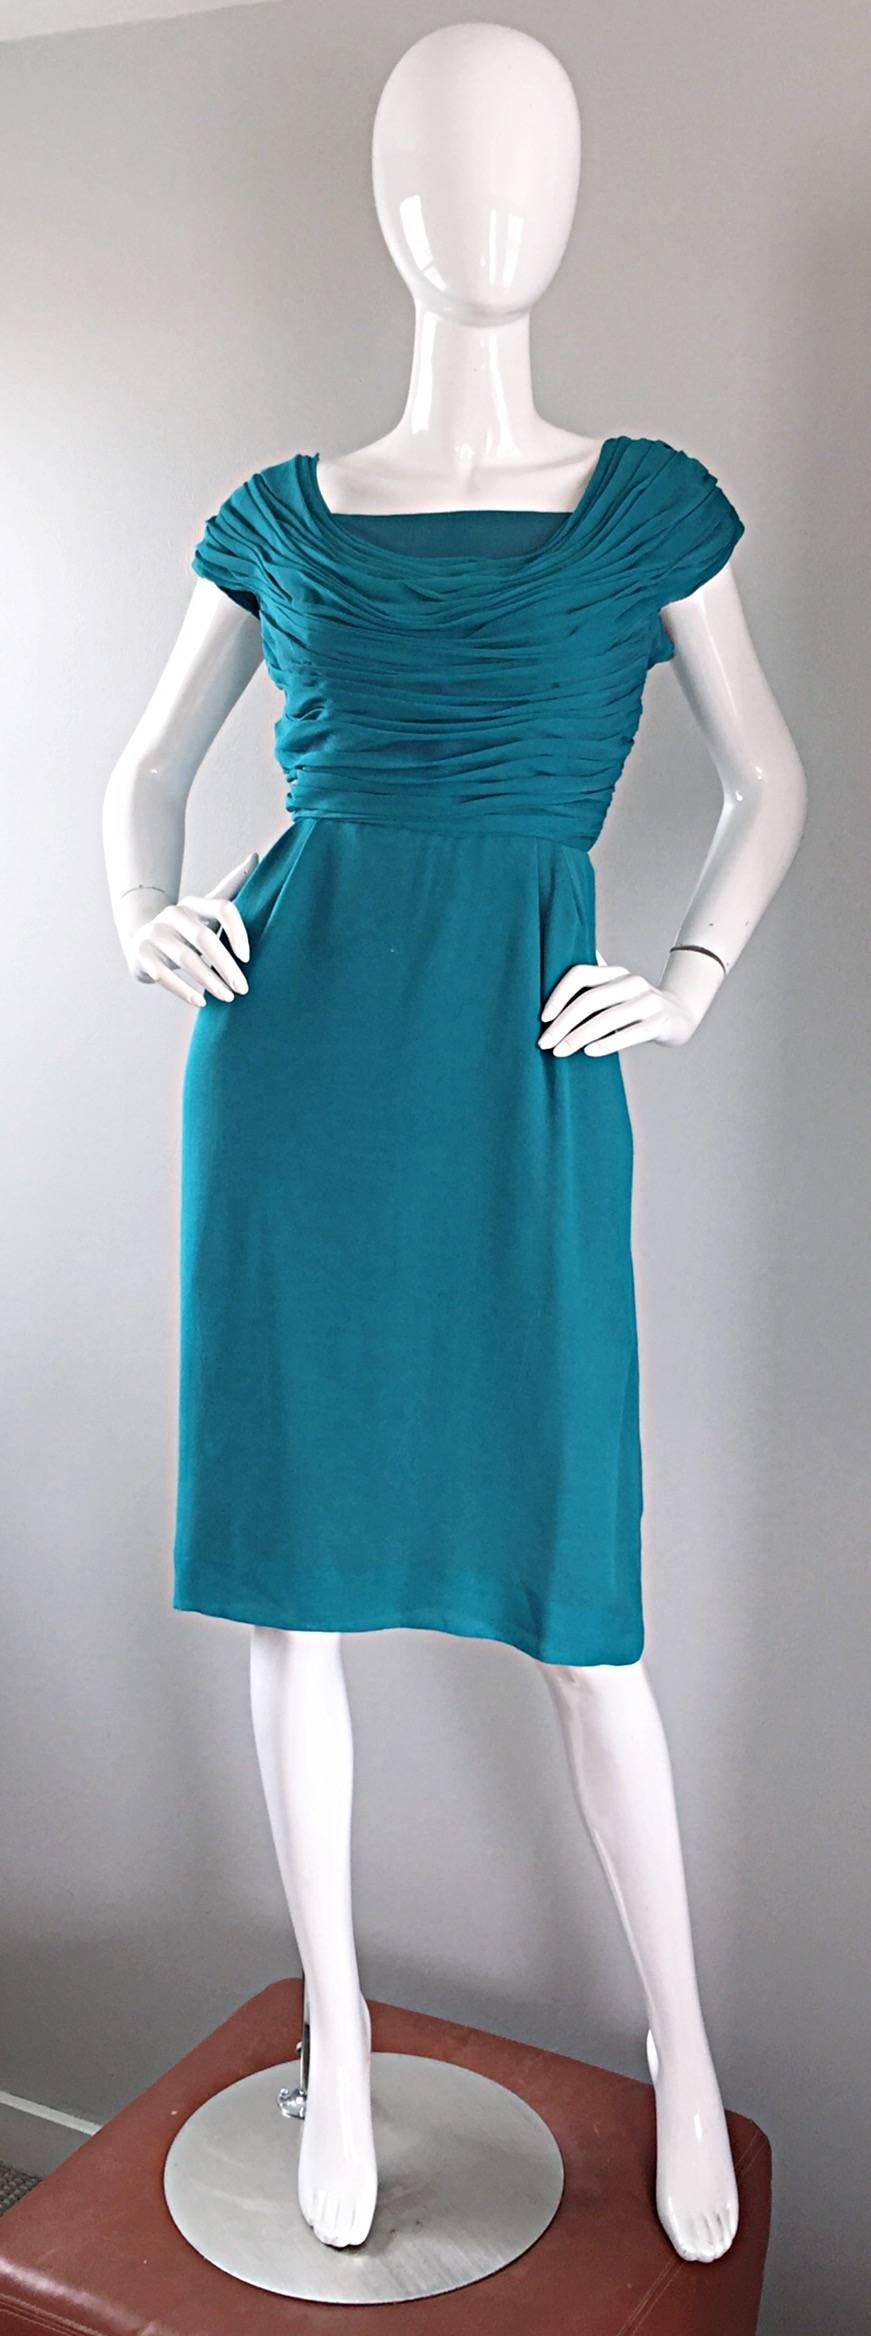 Magnifique robe en mousseline de soie bleu sarcelle ELLIETTE LEWIS des années 1950 ! Le corsage plissé et froncé a une allure grecque, et comporte des manches courtes. Jupe droite flatteuse. Plusieurs couches de mousseline de soie douce. Fermeture à